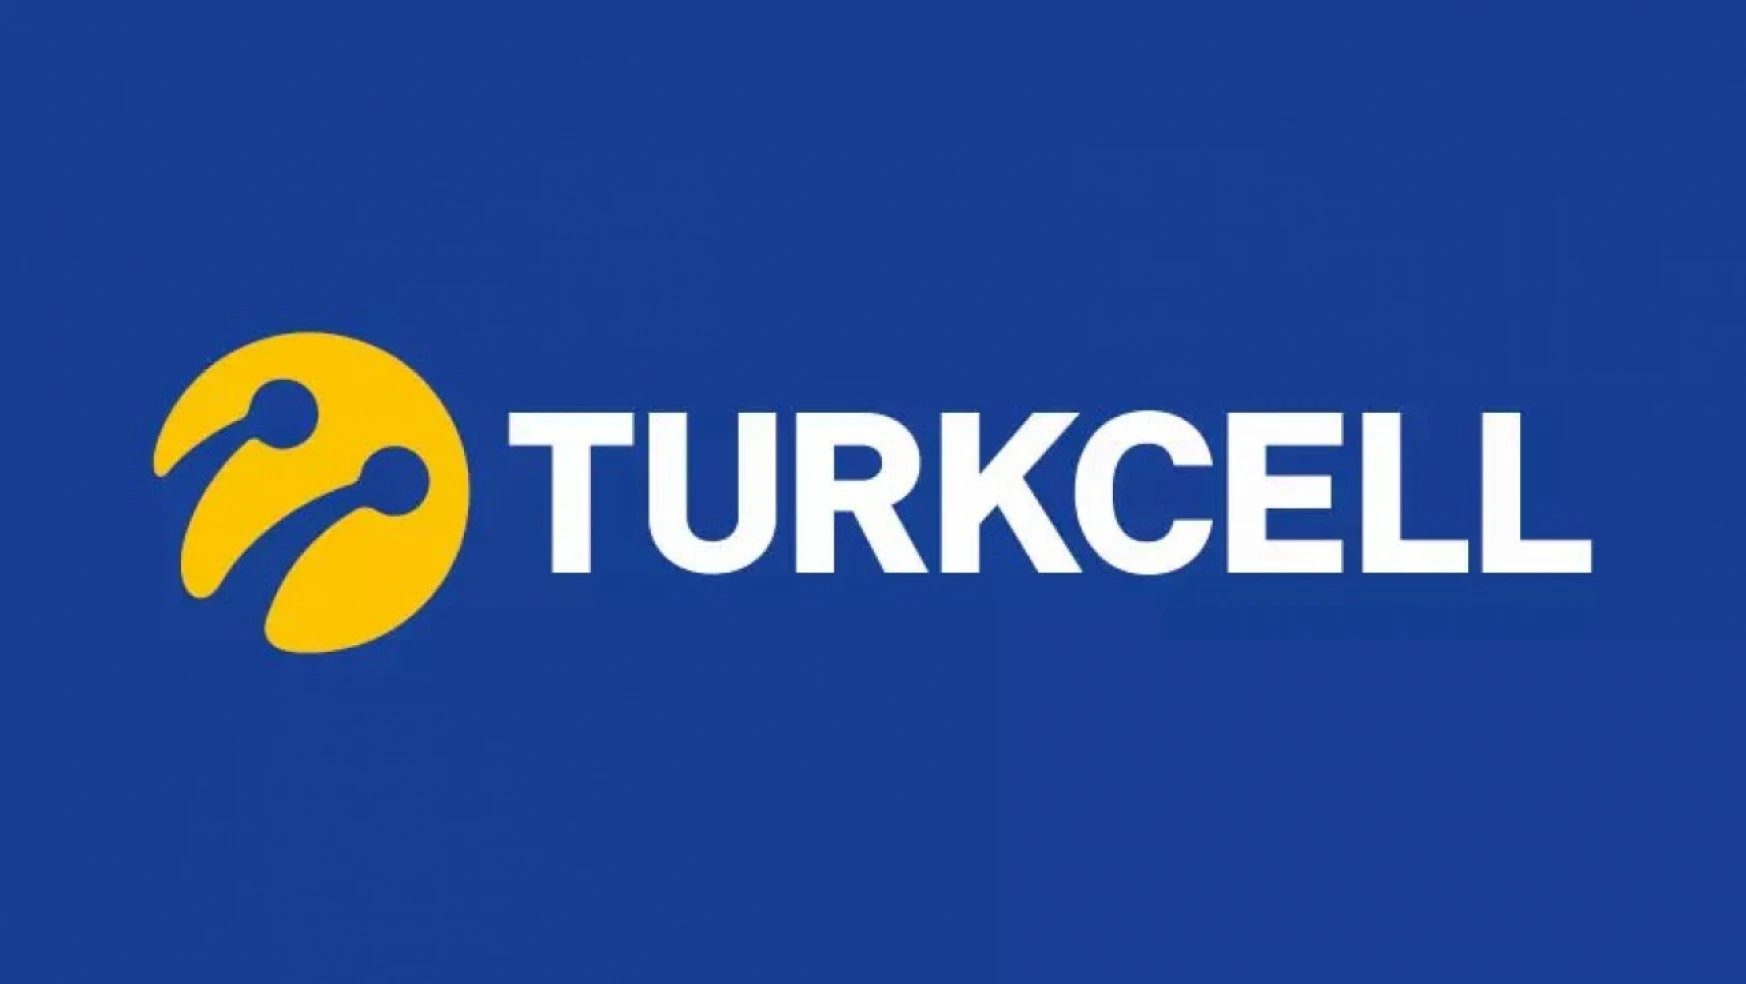 Turkcell Yönetim Kurulu üyelerinin maaşları açıklandı